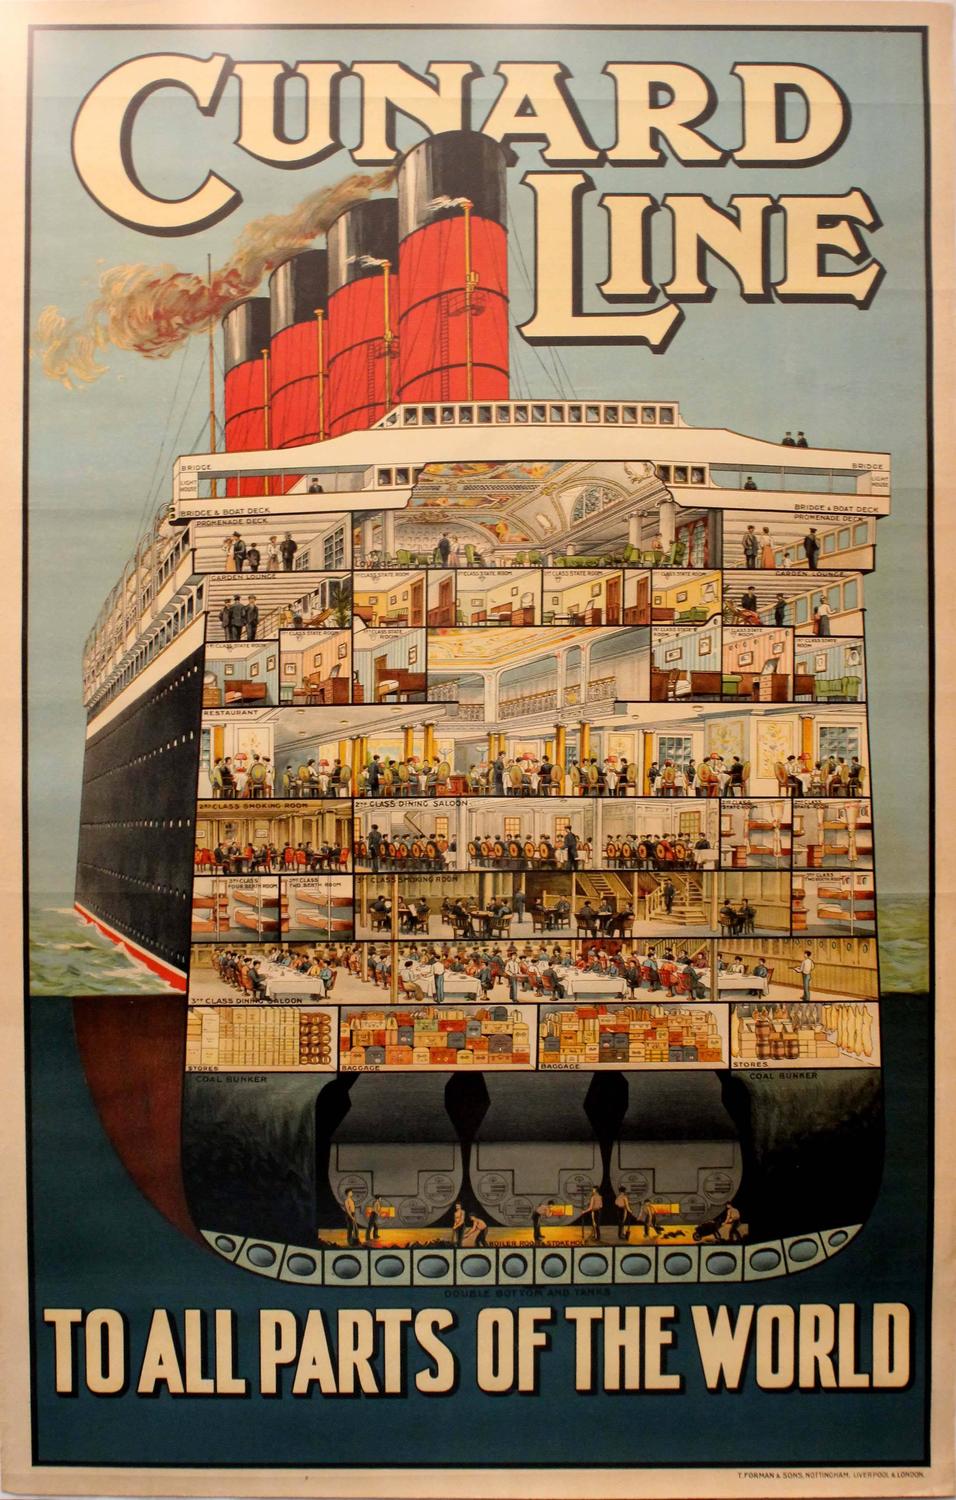 cruise ship 1920